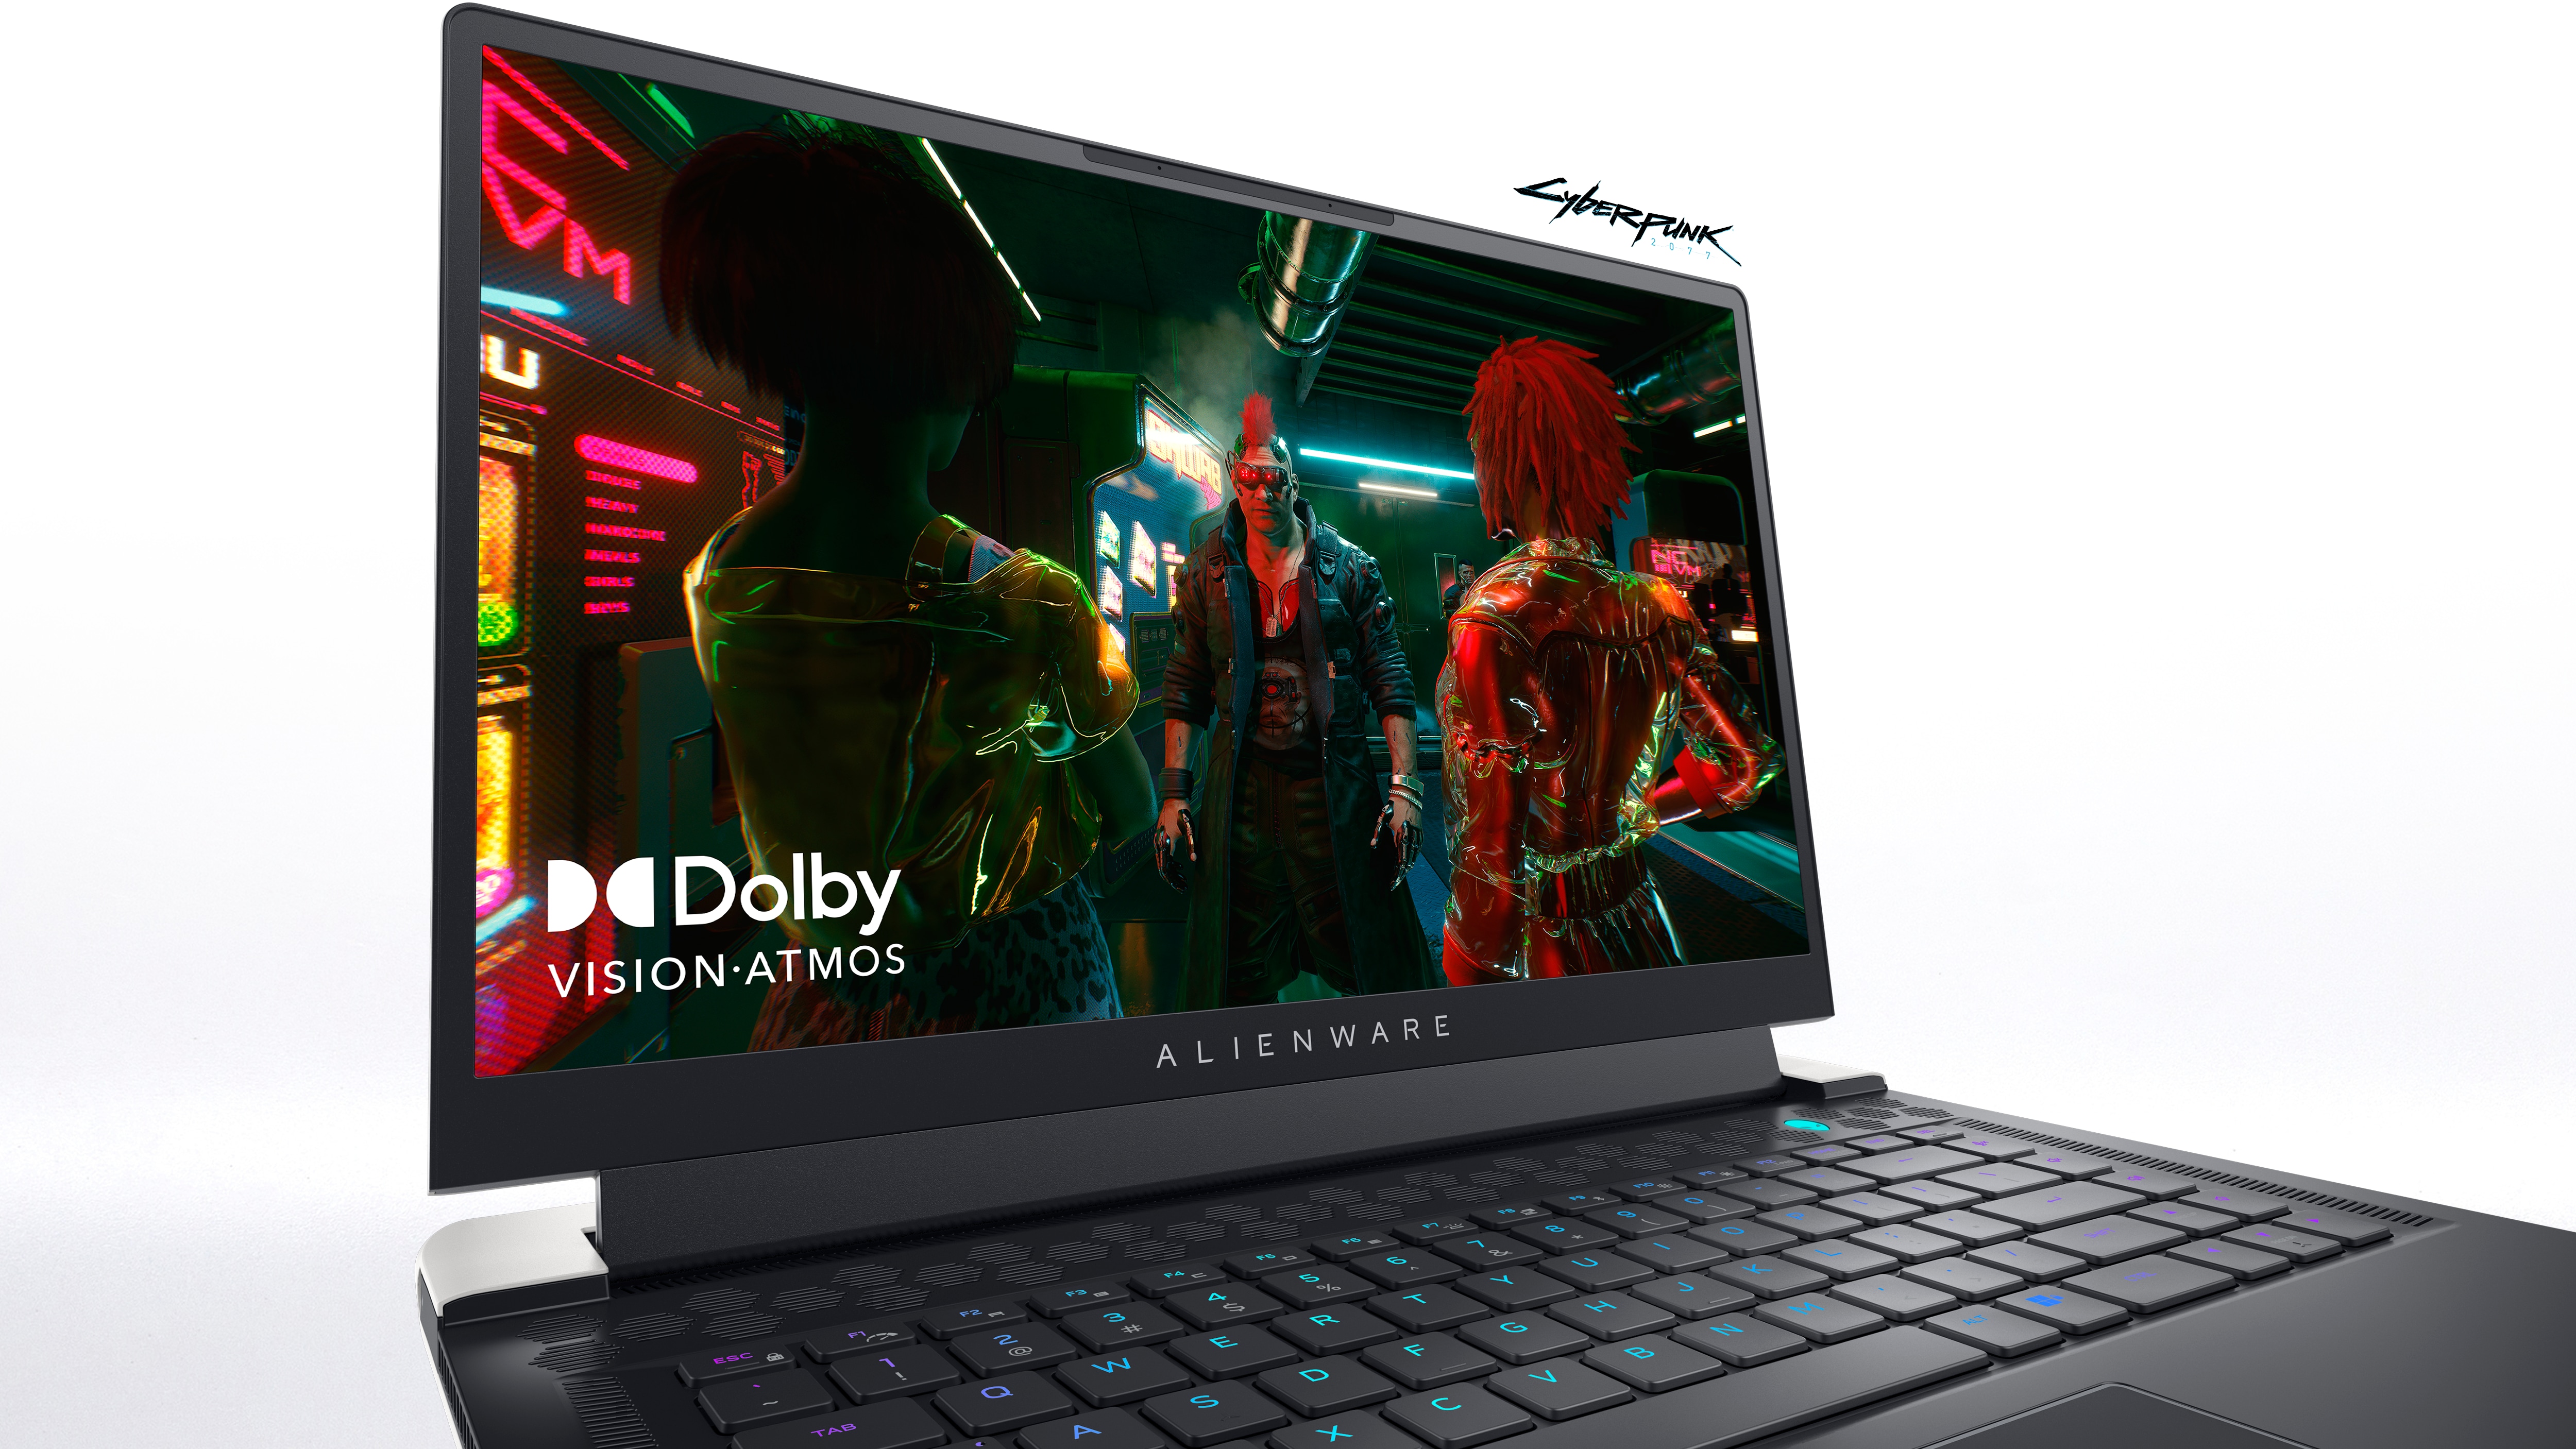 Bild eines Dell Alienware x15 R2 Gaminglaptops mit der Abbildung eines Spiels und des Logos von Dolby Vision-Atmos auf dem Bildschirm.